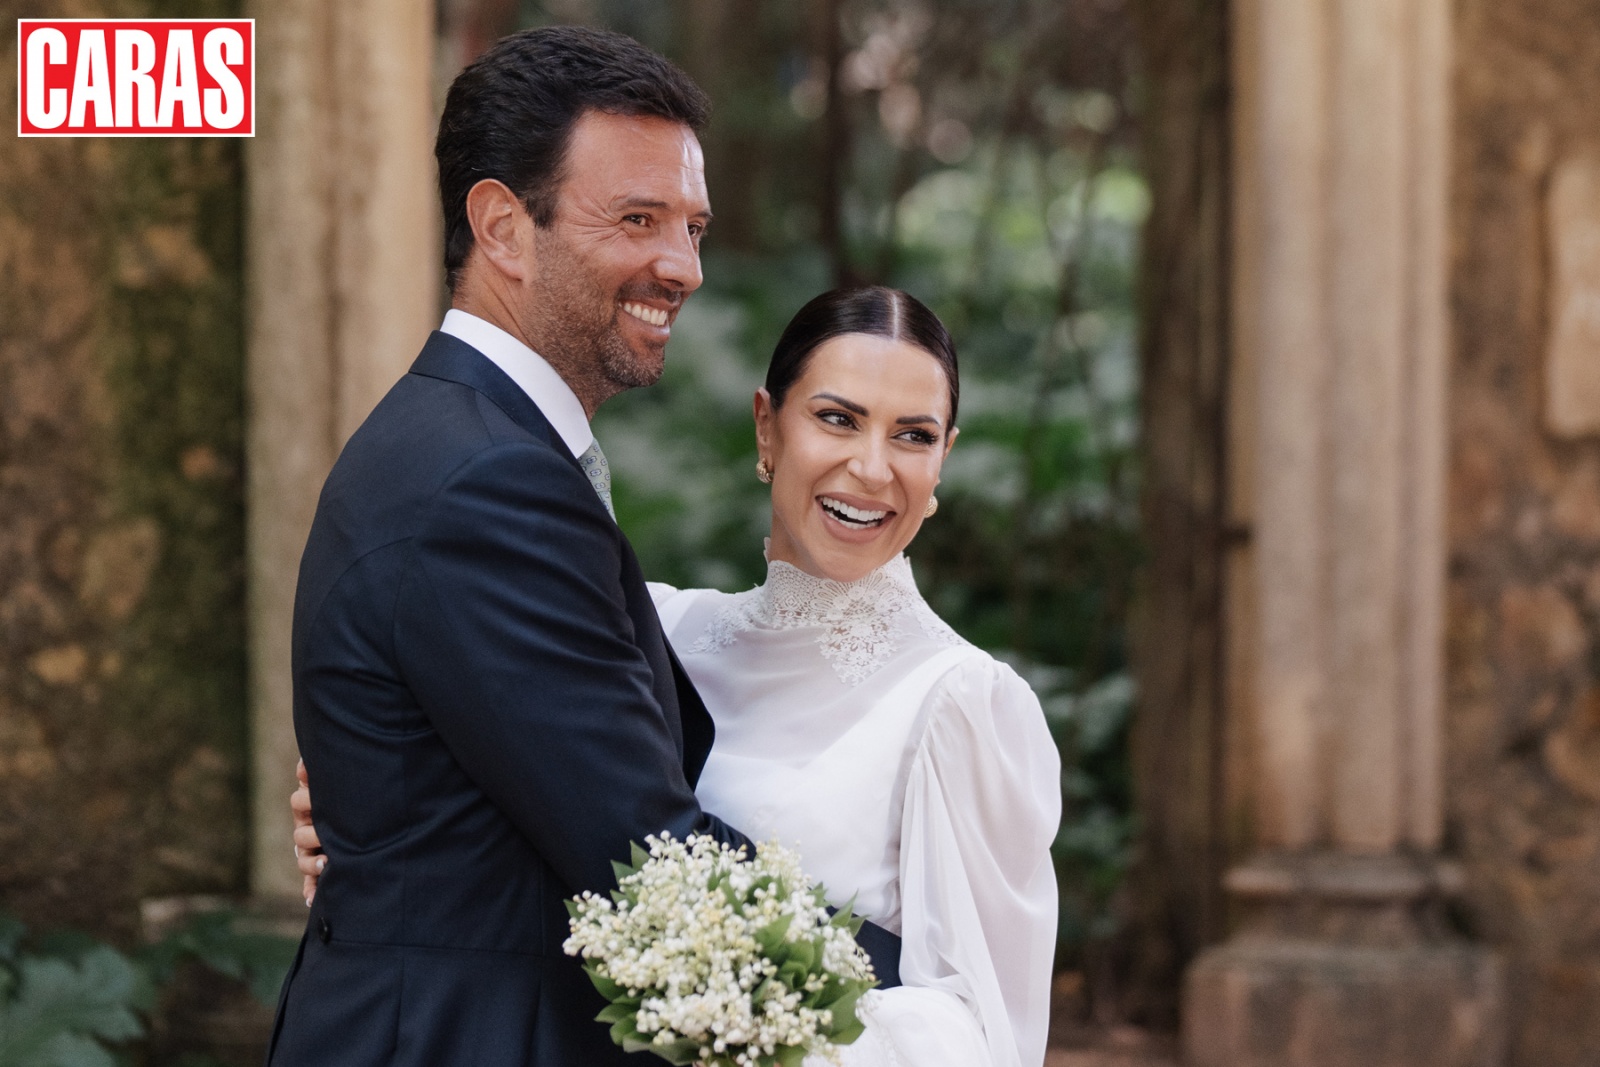 Assista ao vídeo exclusivo do casamento de sonho de Dânia Neto e Luís Matos Cunha